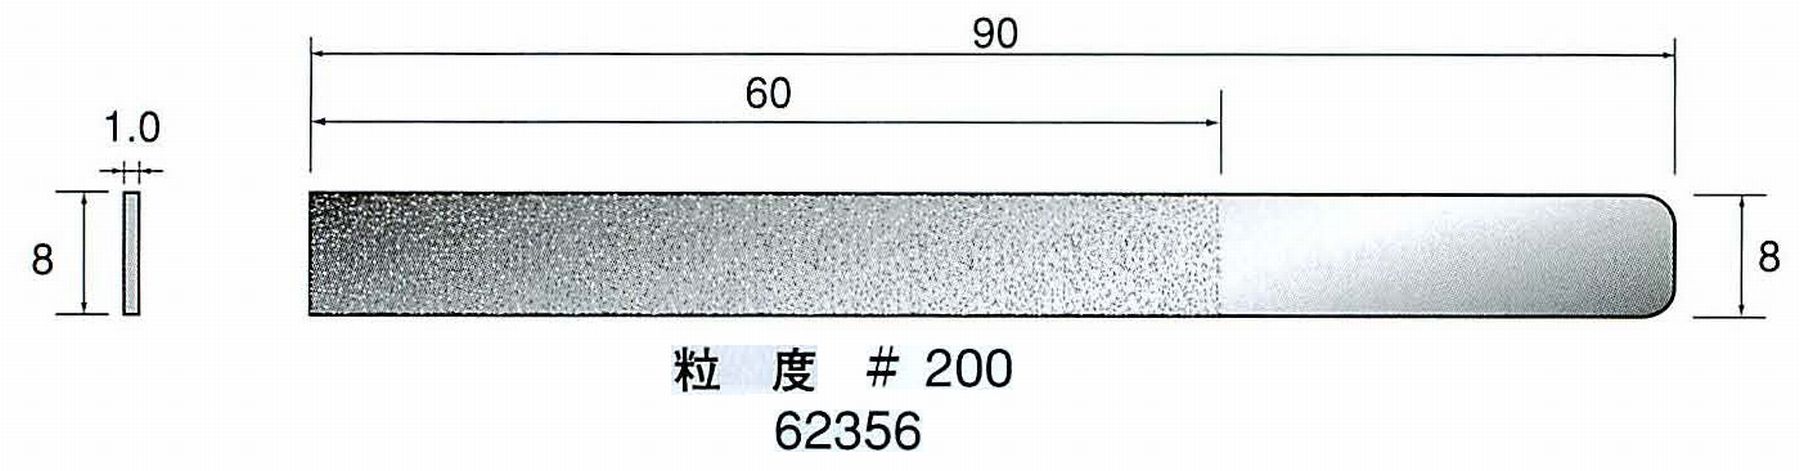 ナカニシ/NAKANISHI ハンディタイプ 電動・エアーヤスリ(往復動) ラスター専用工具 ダイヤモンドヤスリフラットタイプ 62356